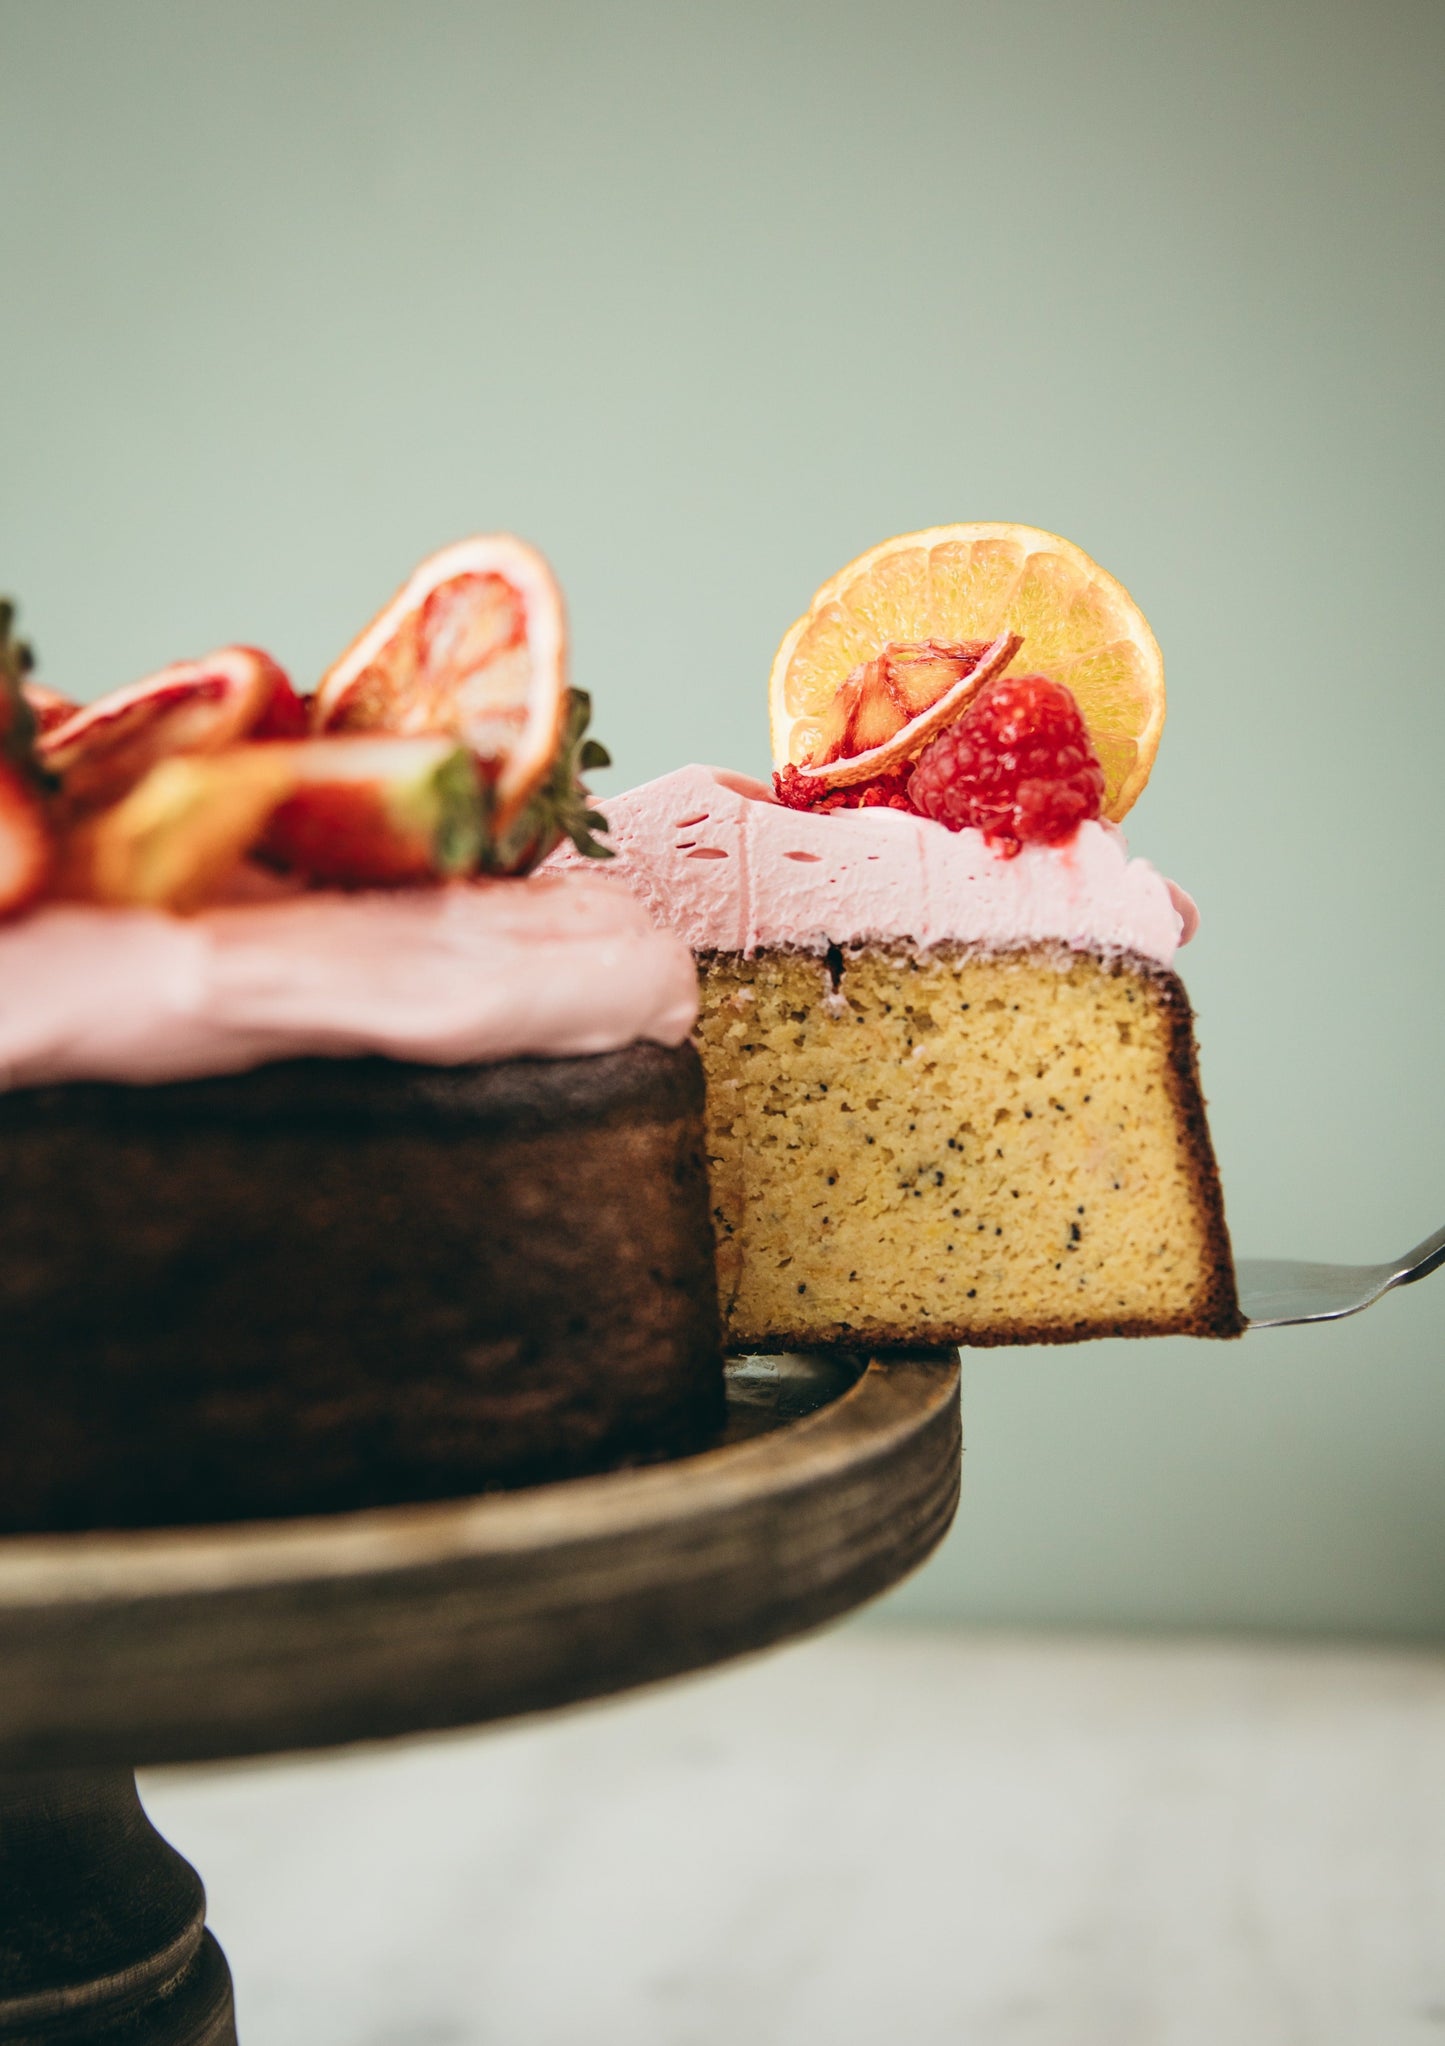 Flourless Orange & Poppyseed Cake (gluten free)